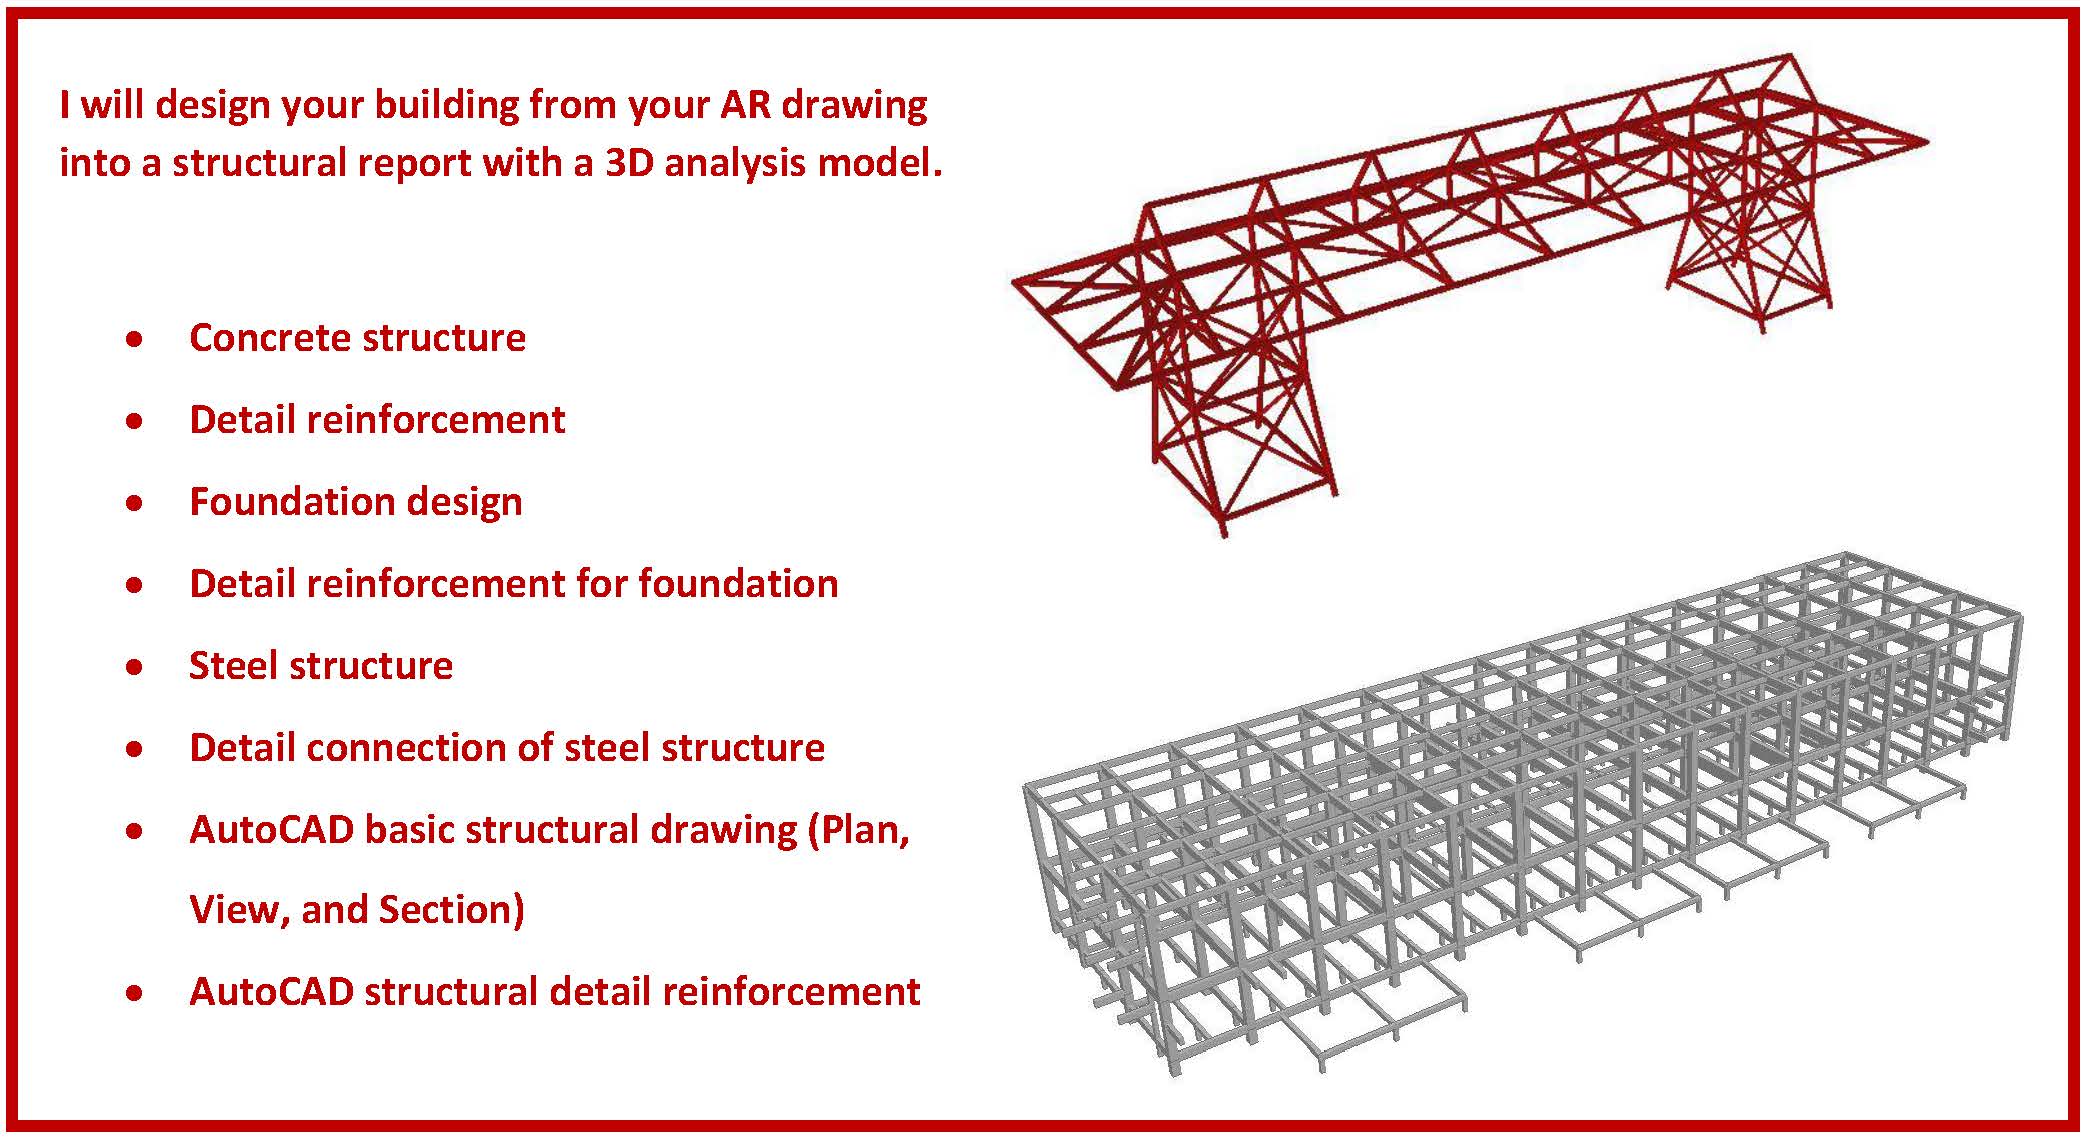 autocad structural detailing concrete